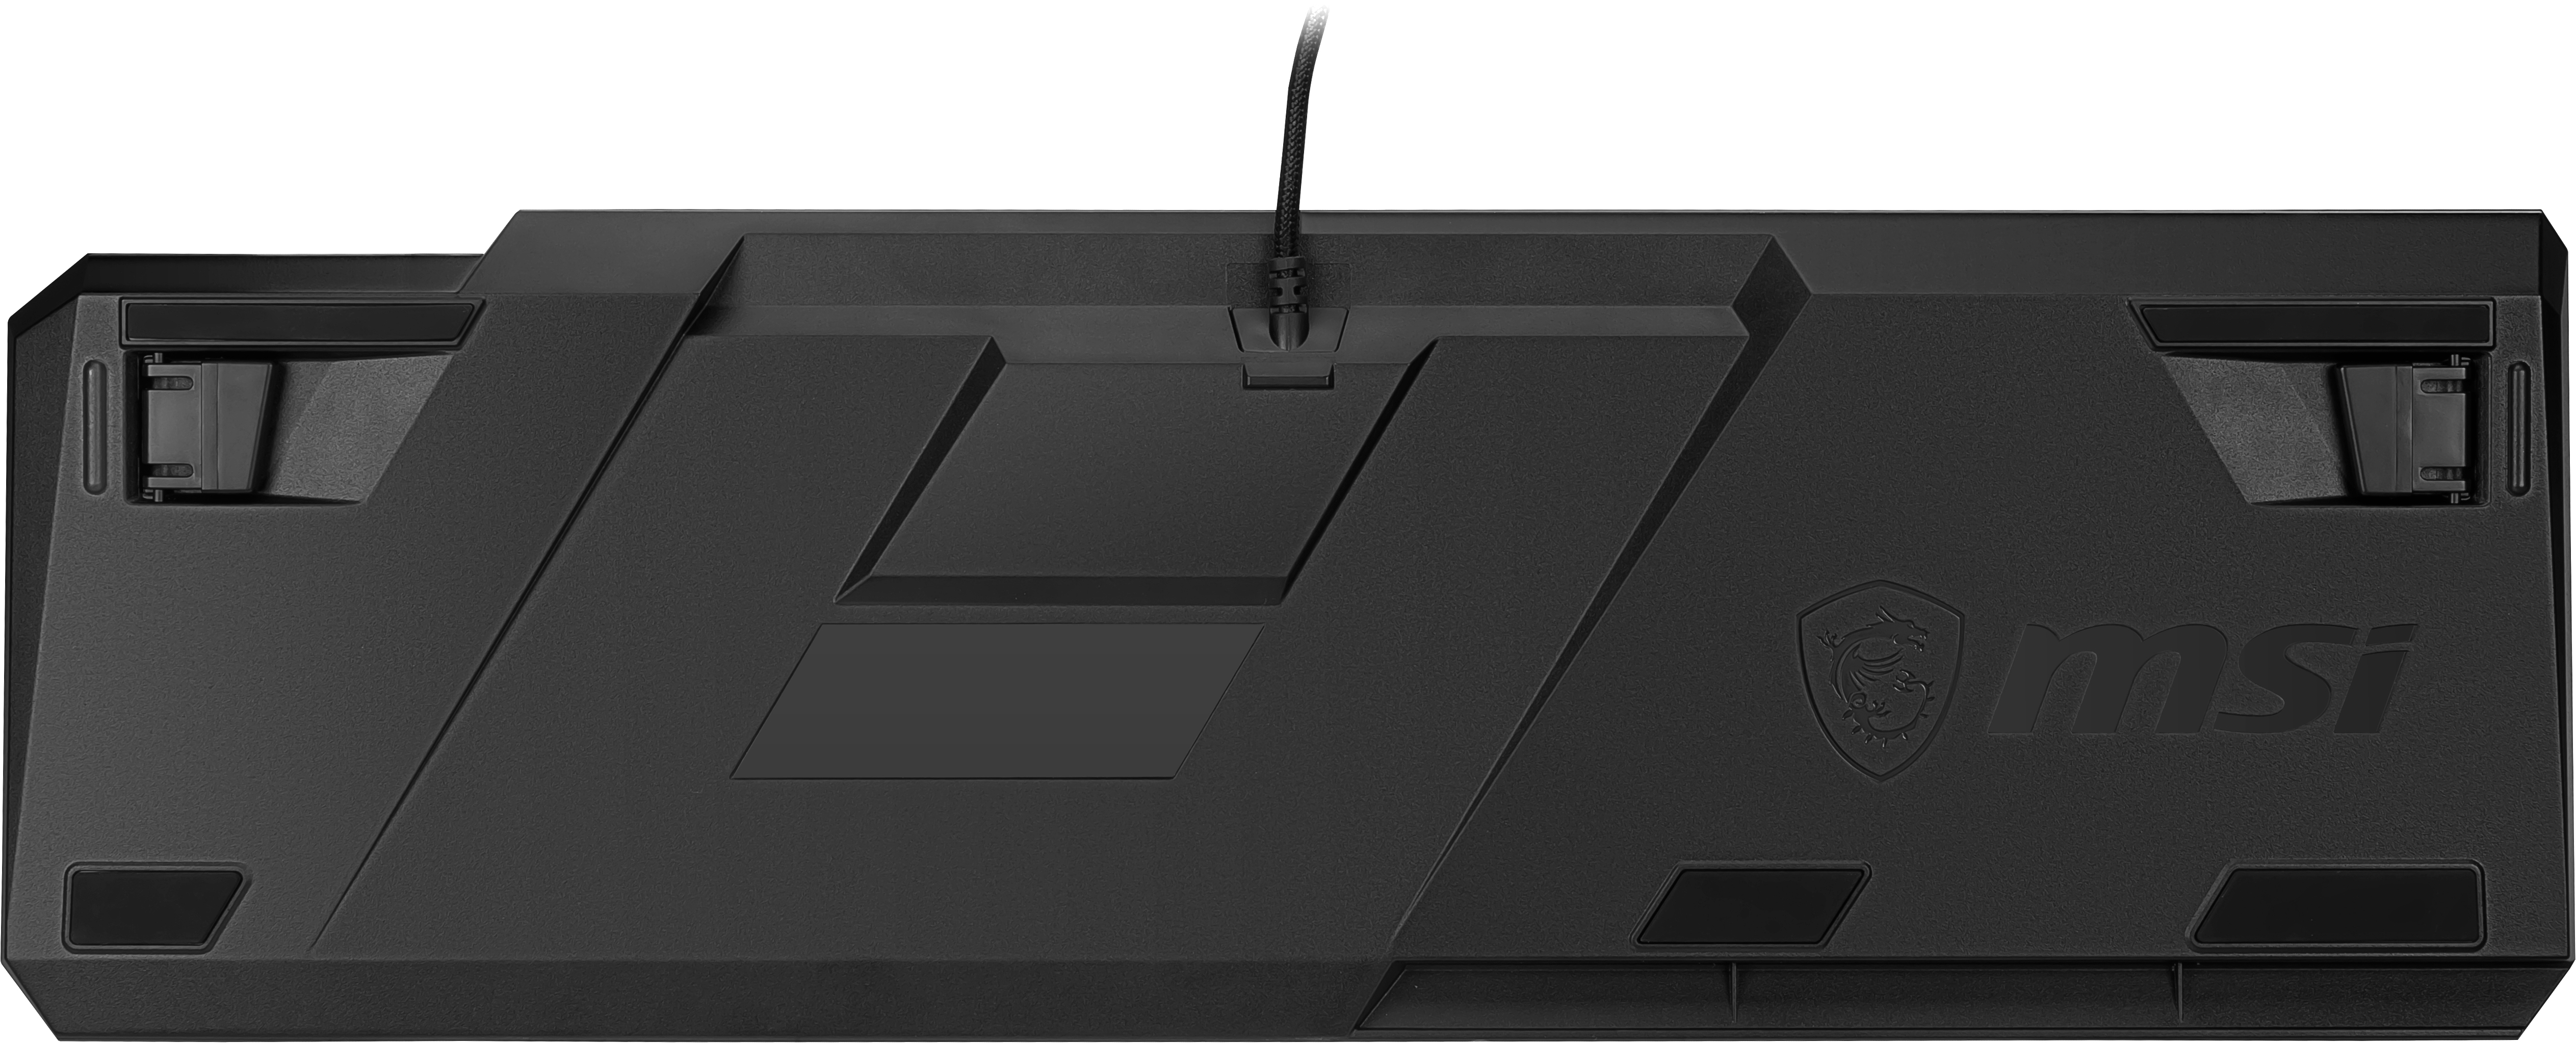 Tastatur QWERTZ Vigor pro 50 MSI schwarz, DE LP Switch, GK Gaming (kabelgebunden, Taste) Layout, Profile Kailh Low RGB